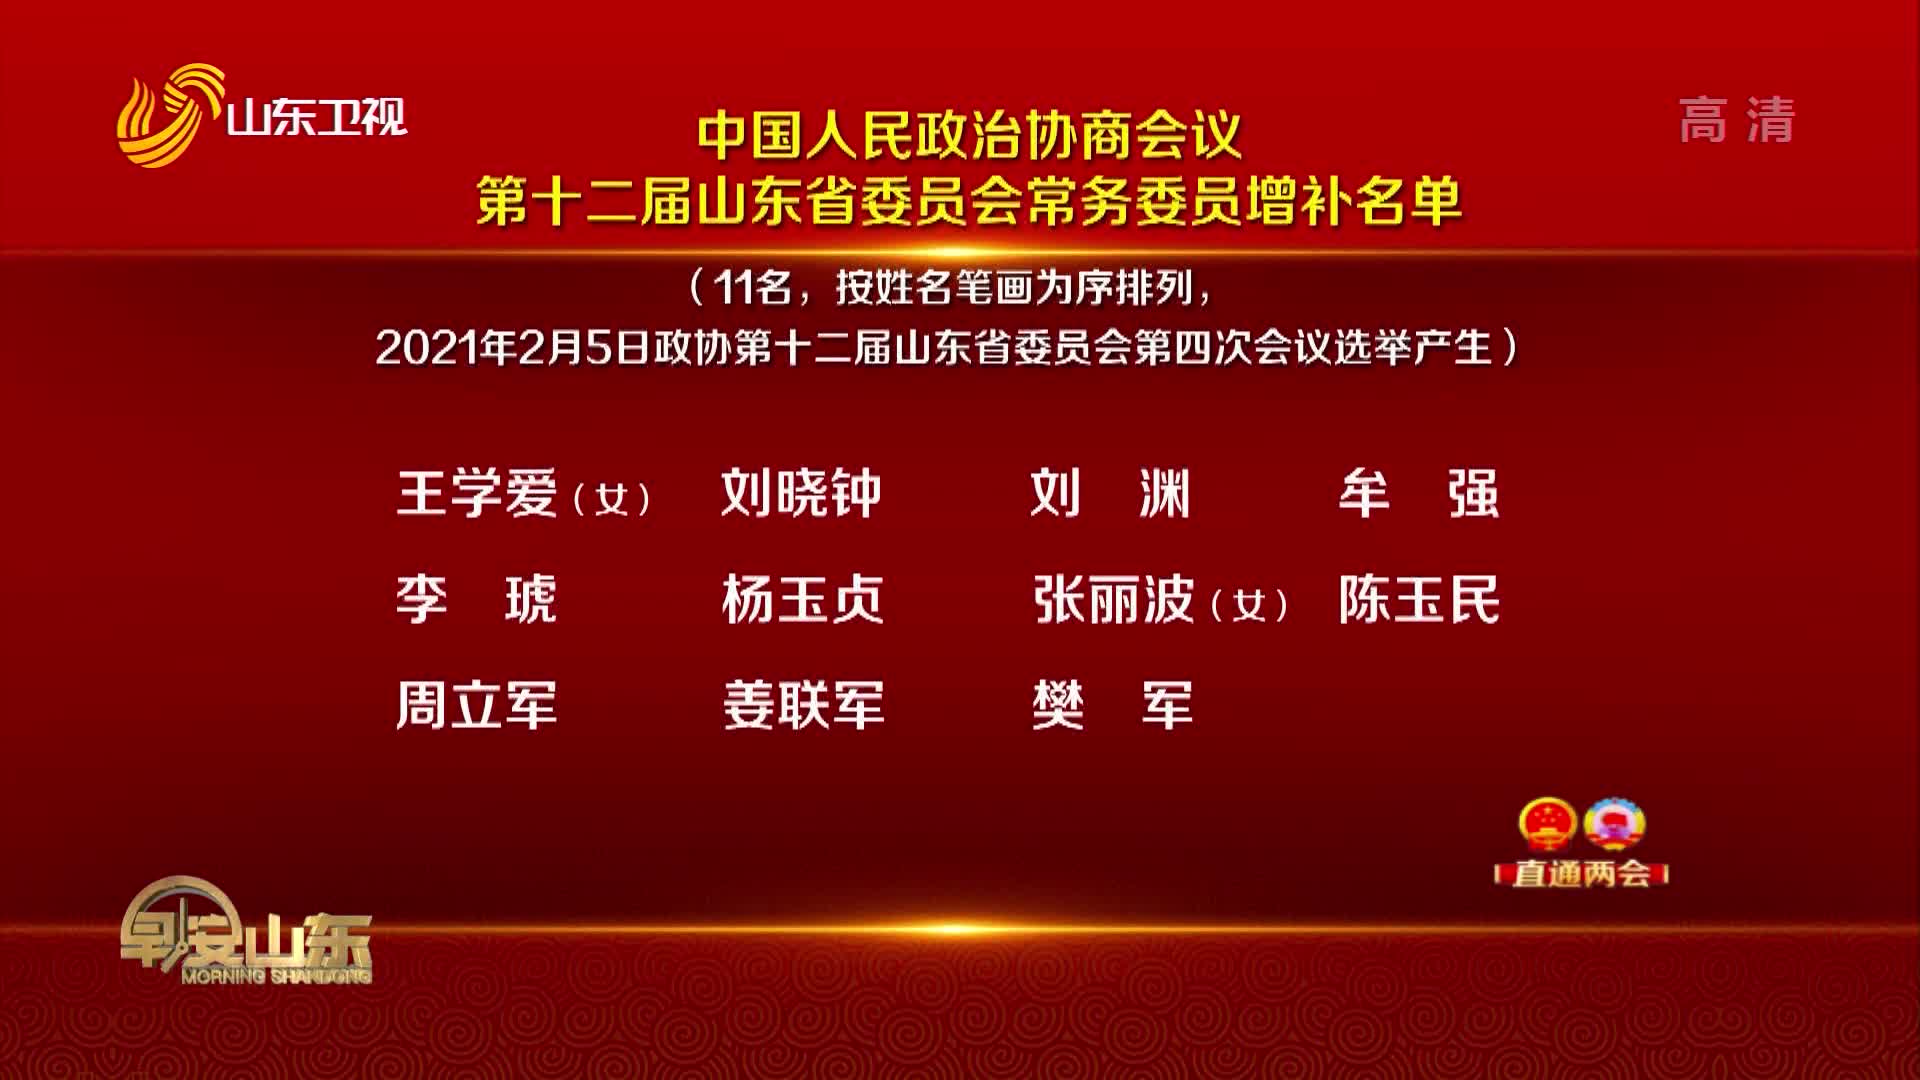 【直通两会】 中国人民政治协商会议第十二届山东省委员会常务委员增补名单